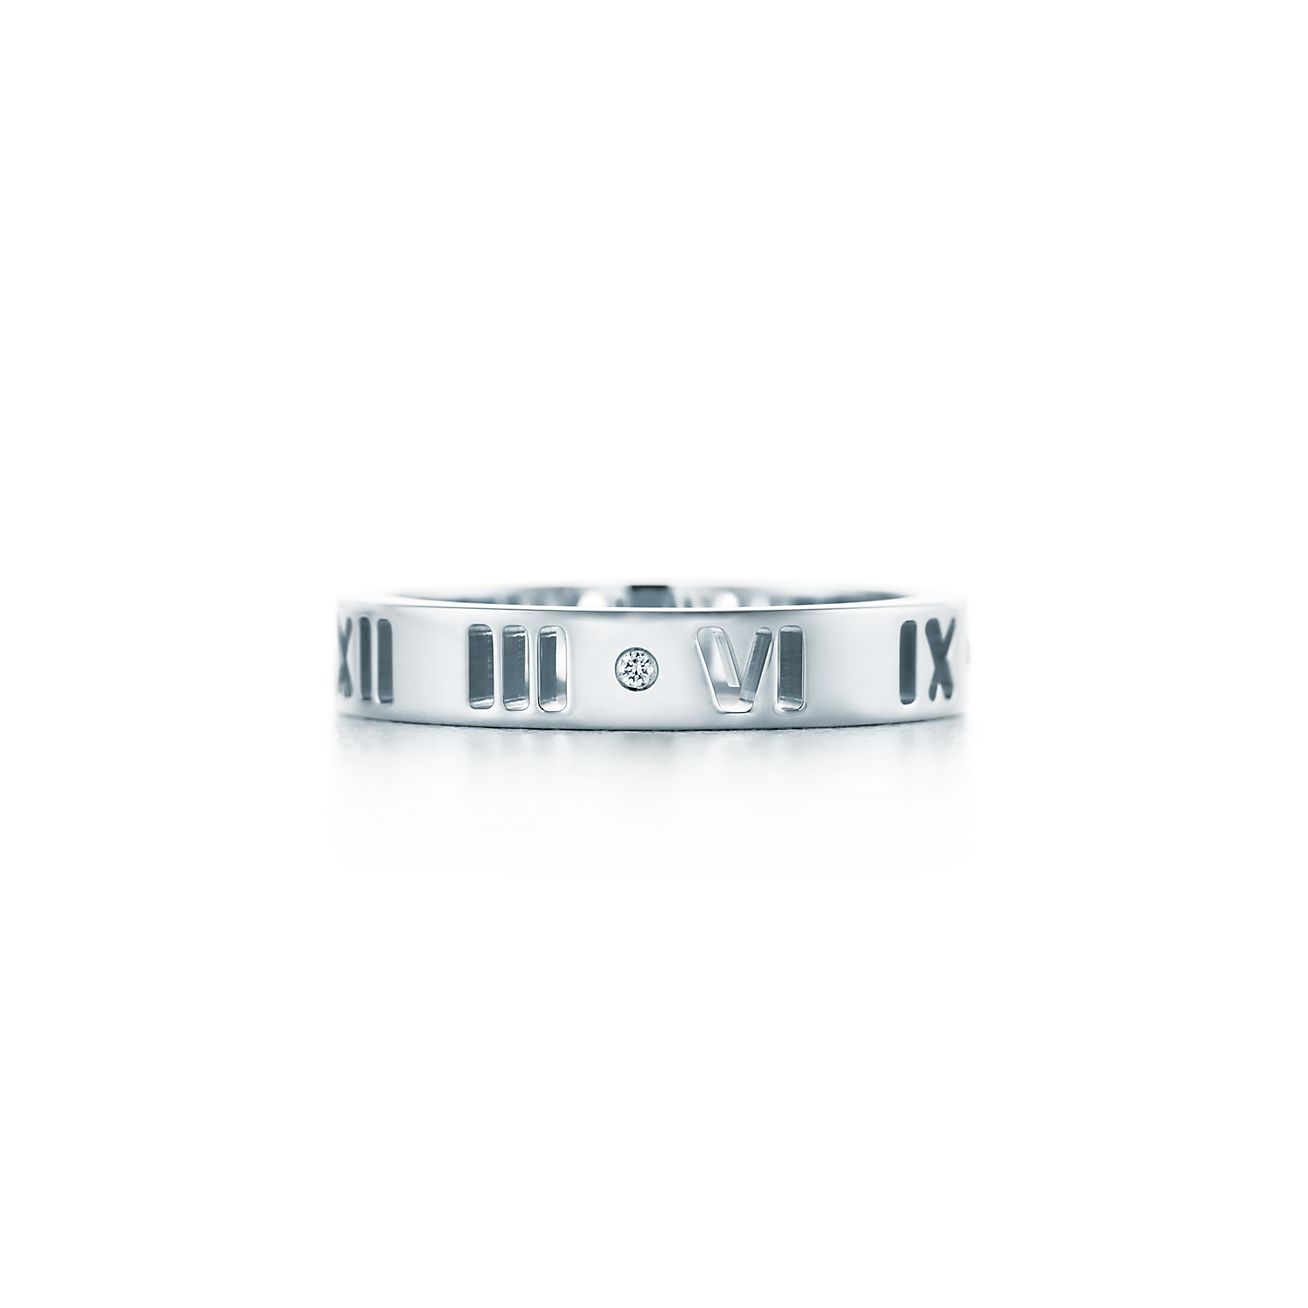 Atlas™ pierced ring in 18k white gold 